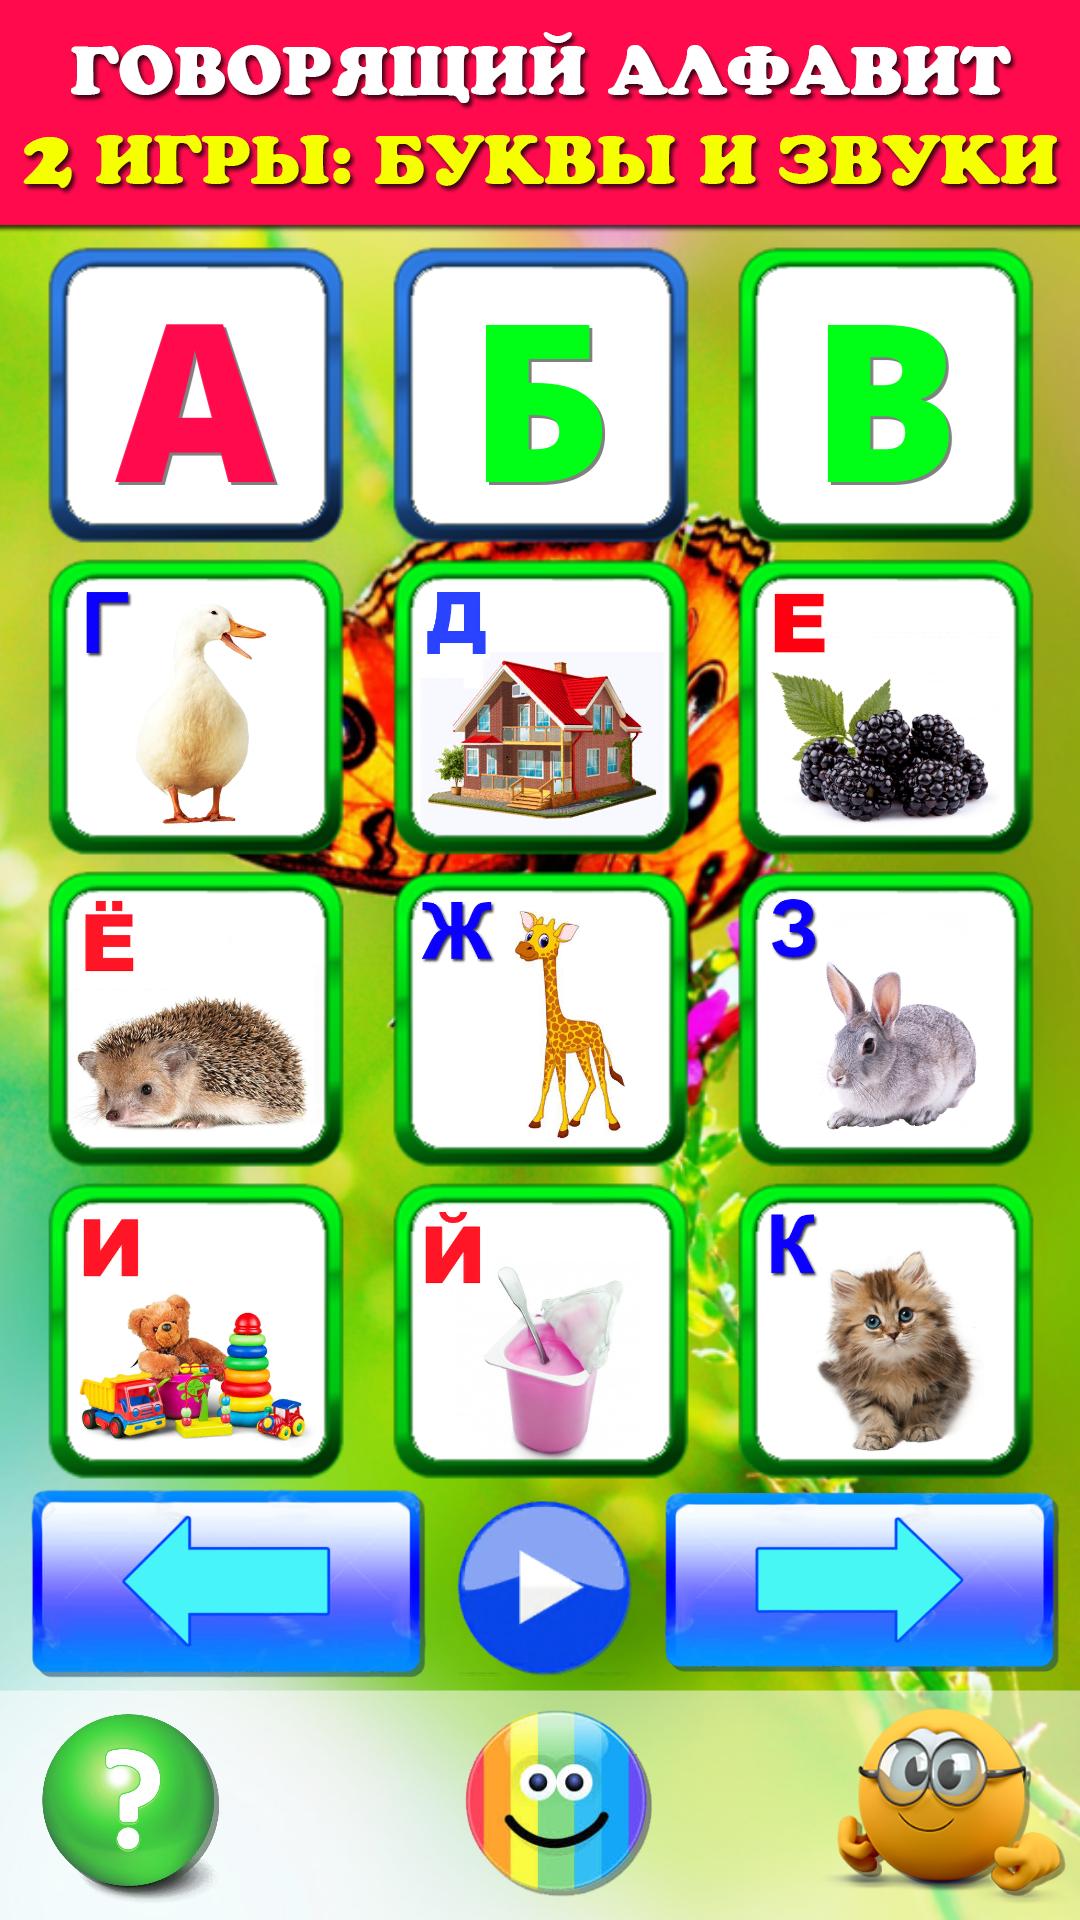 Говорящая азбука алфавит для детей. Учим буквы 2.1 Screenshot 1